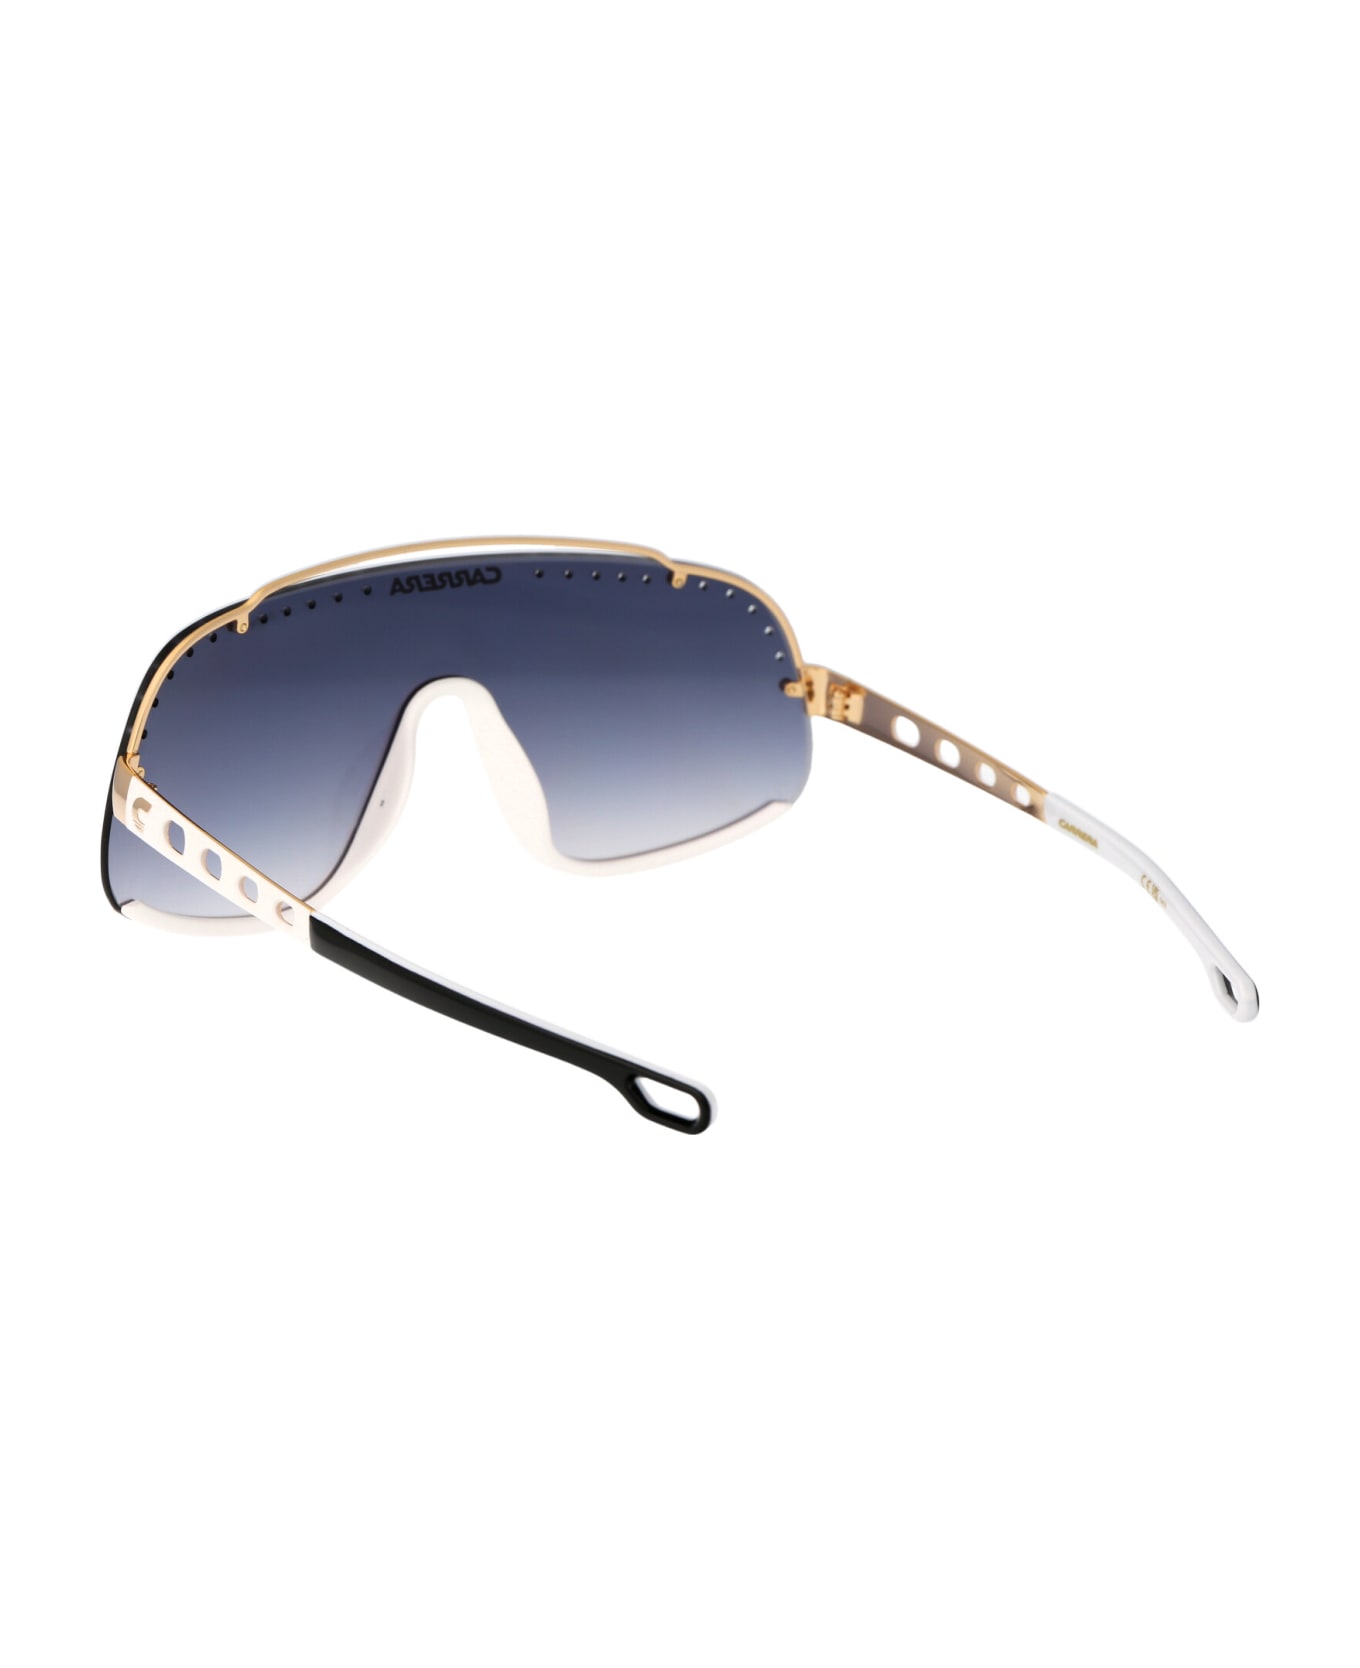 Carrera Flaglab 16 Sunglasses - KY21V BLUE GOLD サングラス